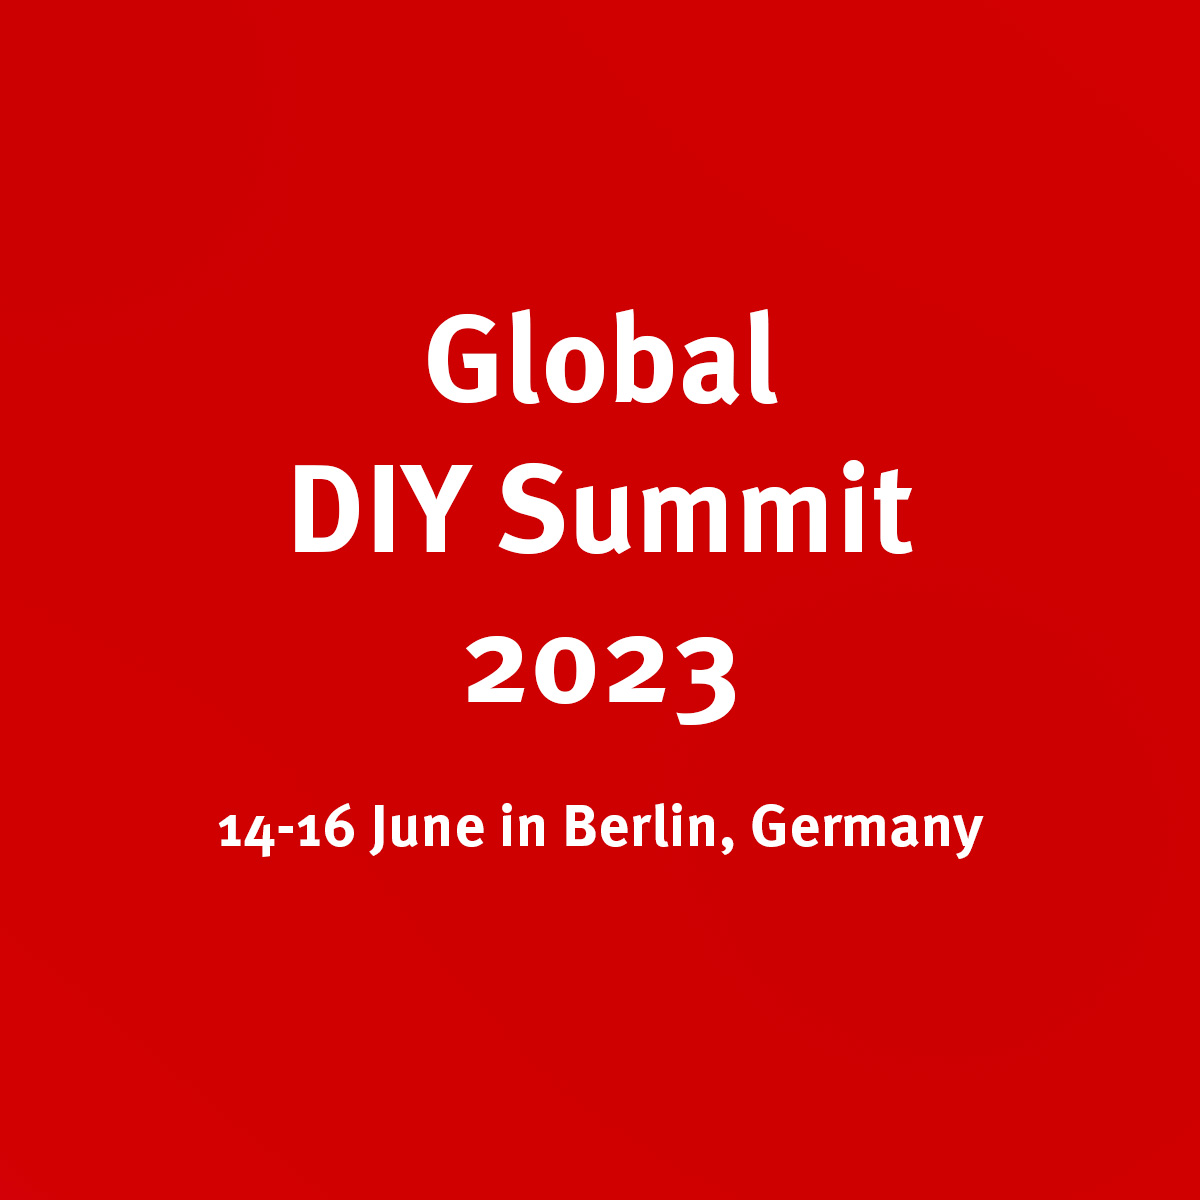 diy summit 2023